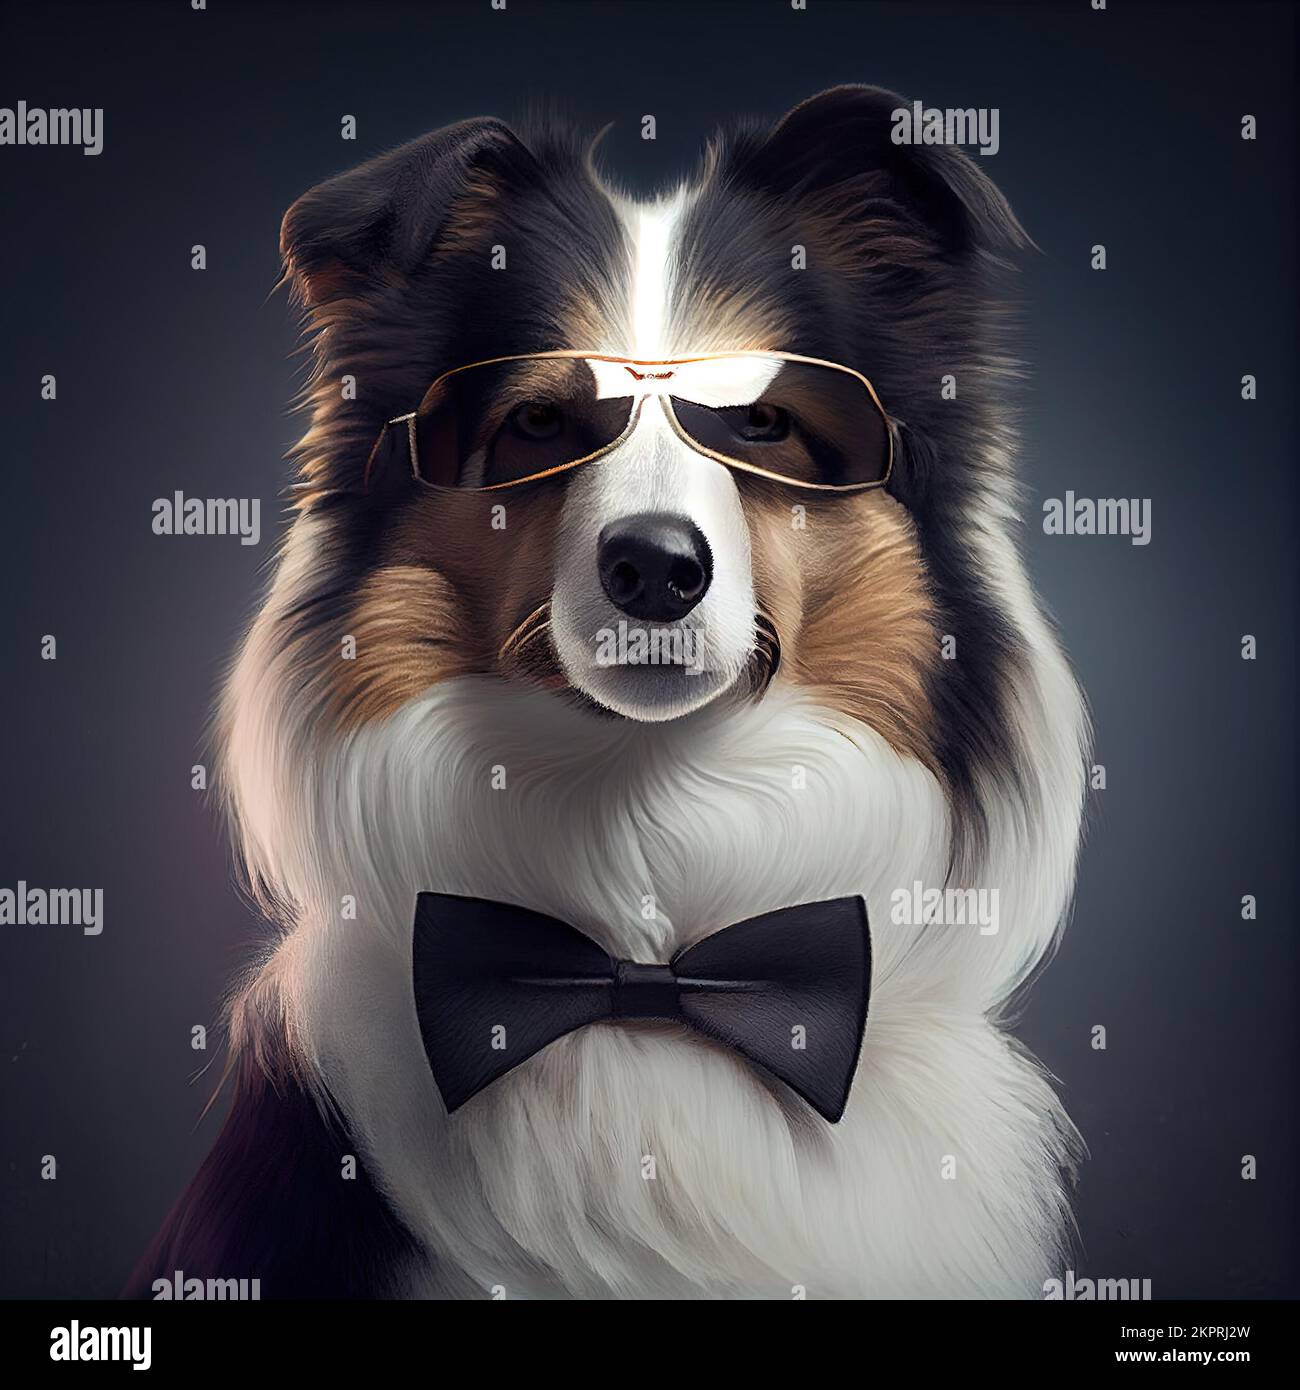 Studio anthropomorphique tourné d'un joli chien Collie en costume. Illustration générée numériquement. Banque D'Images